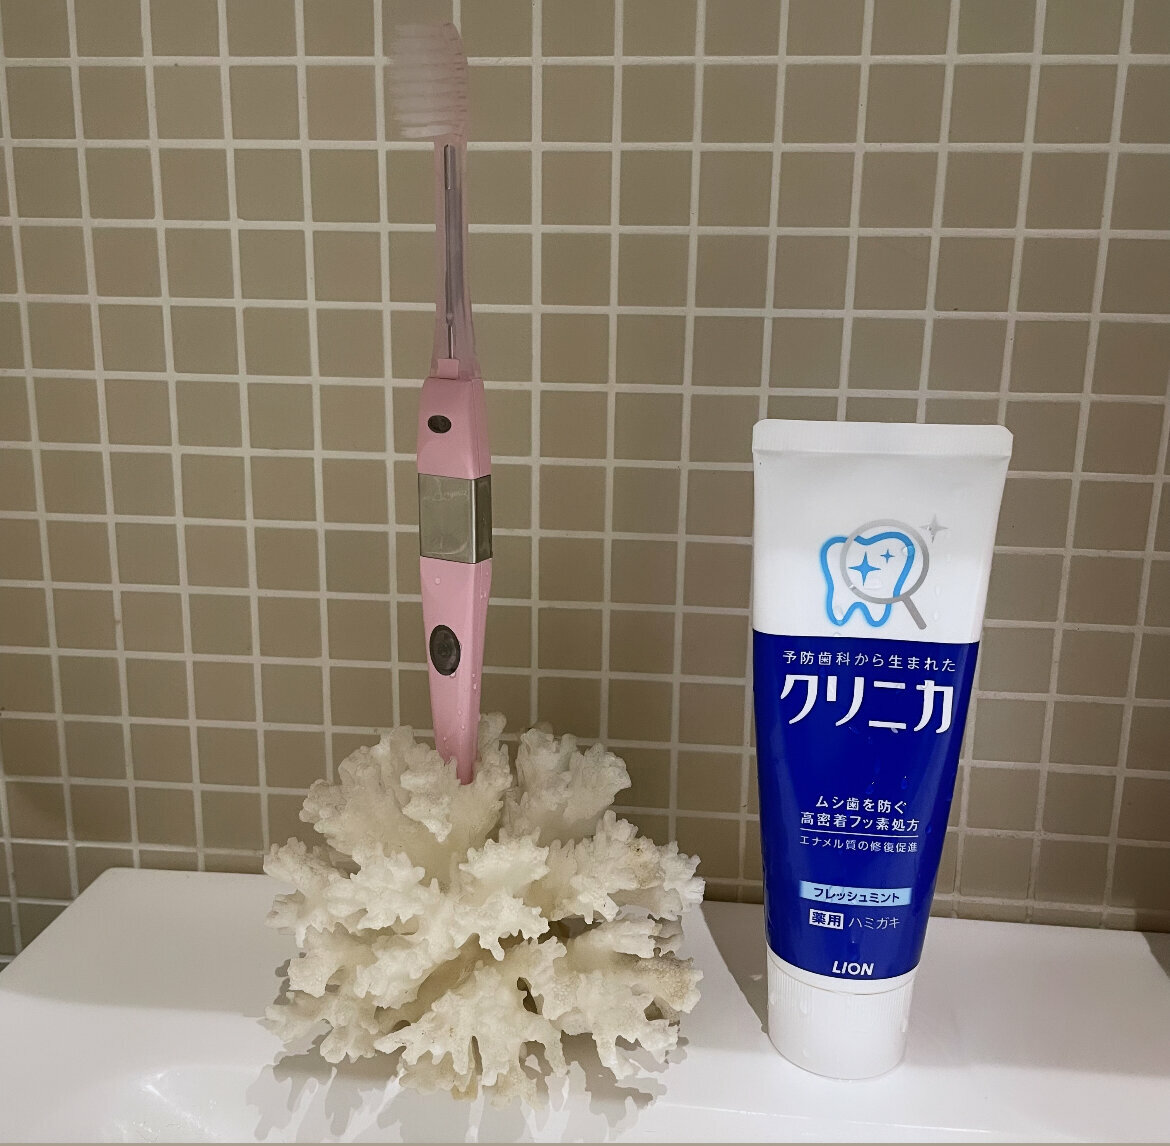 Зубная паста Lion Clinica Fresh Mint с освежающим ароматом мяты, 130 гр - фото №10